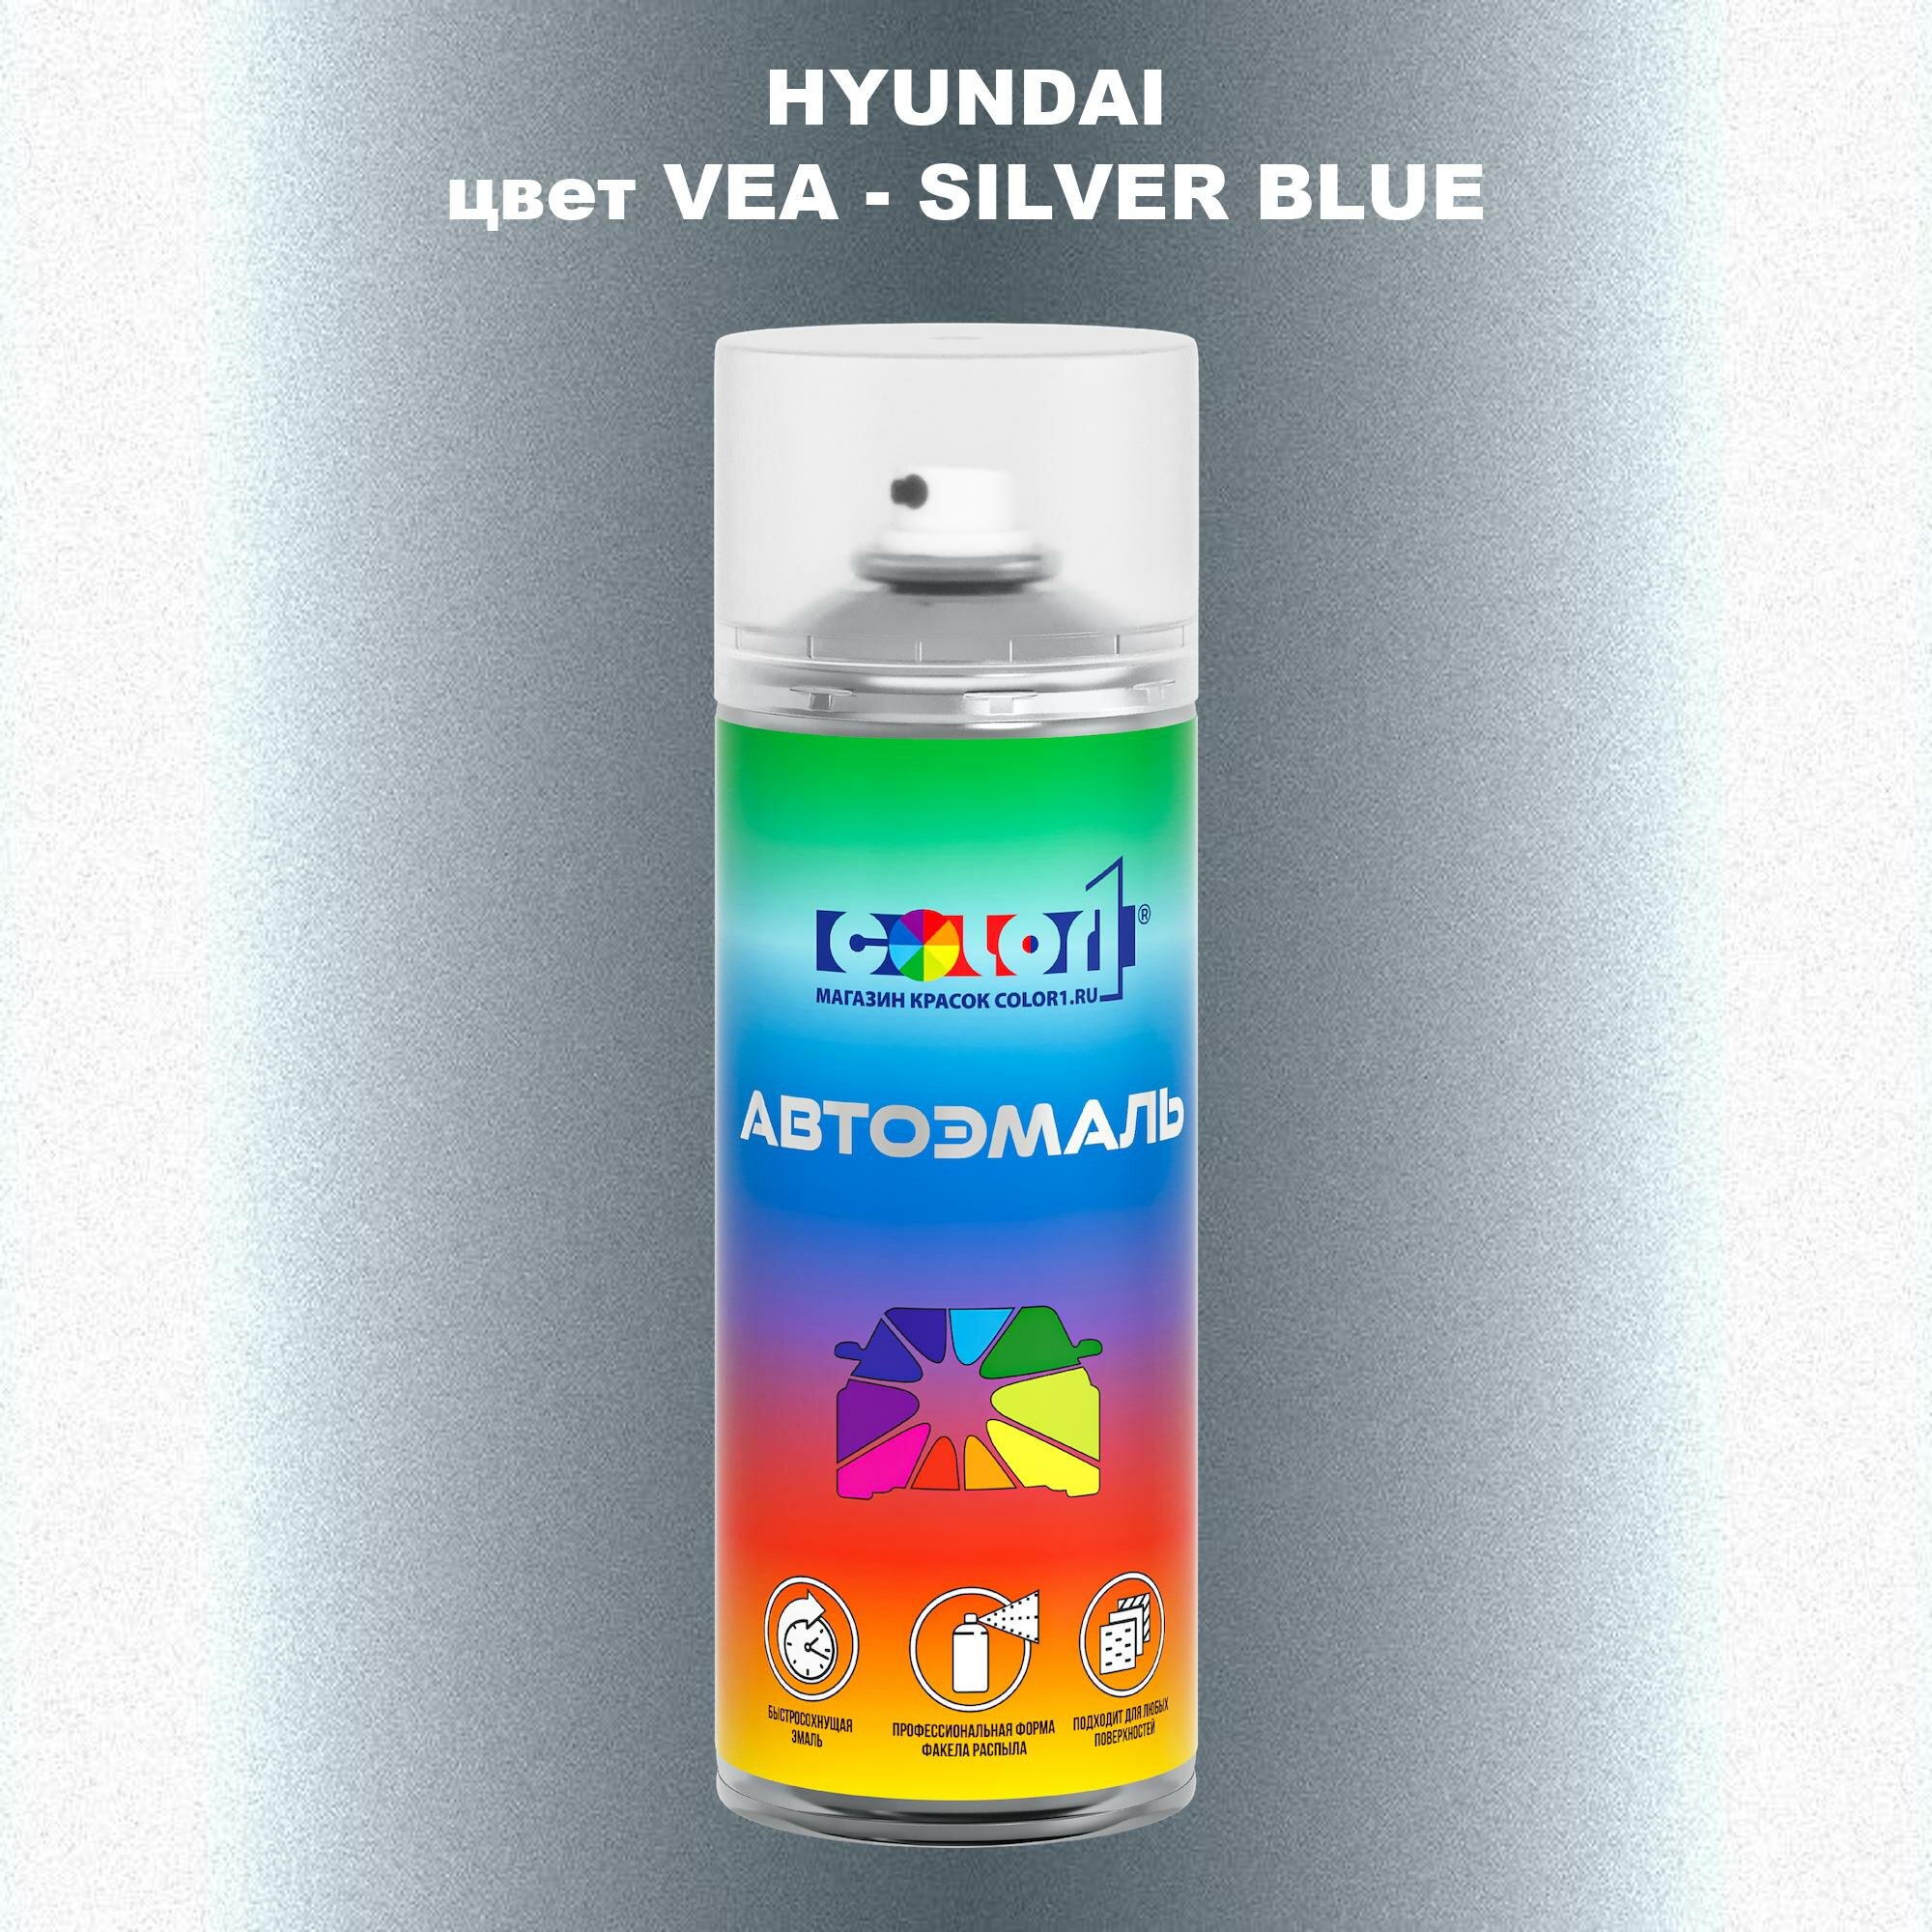 Аэрозольная краска COLOR1 для HYUNDAI цвет VEA - SILVER BLUE